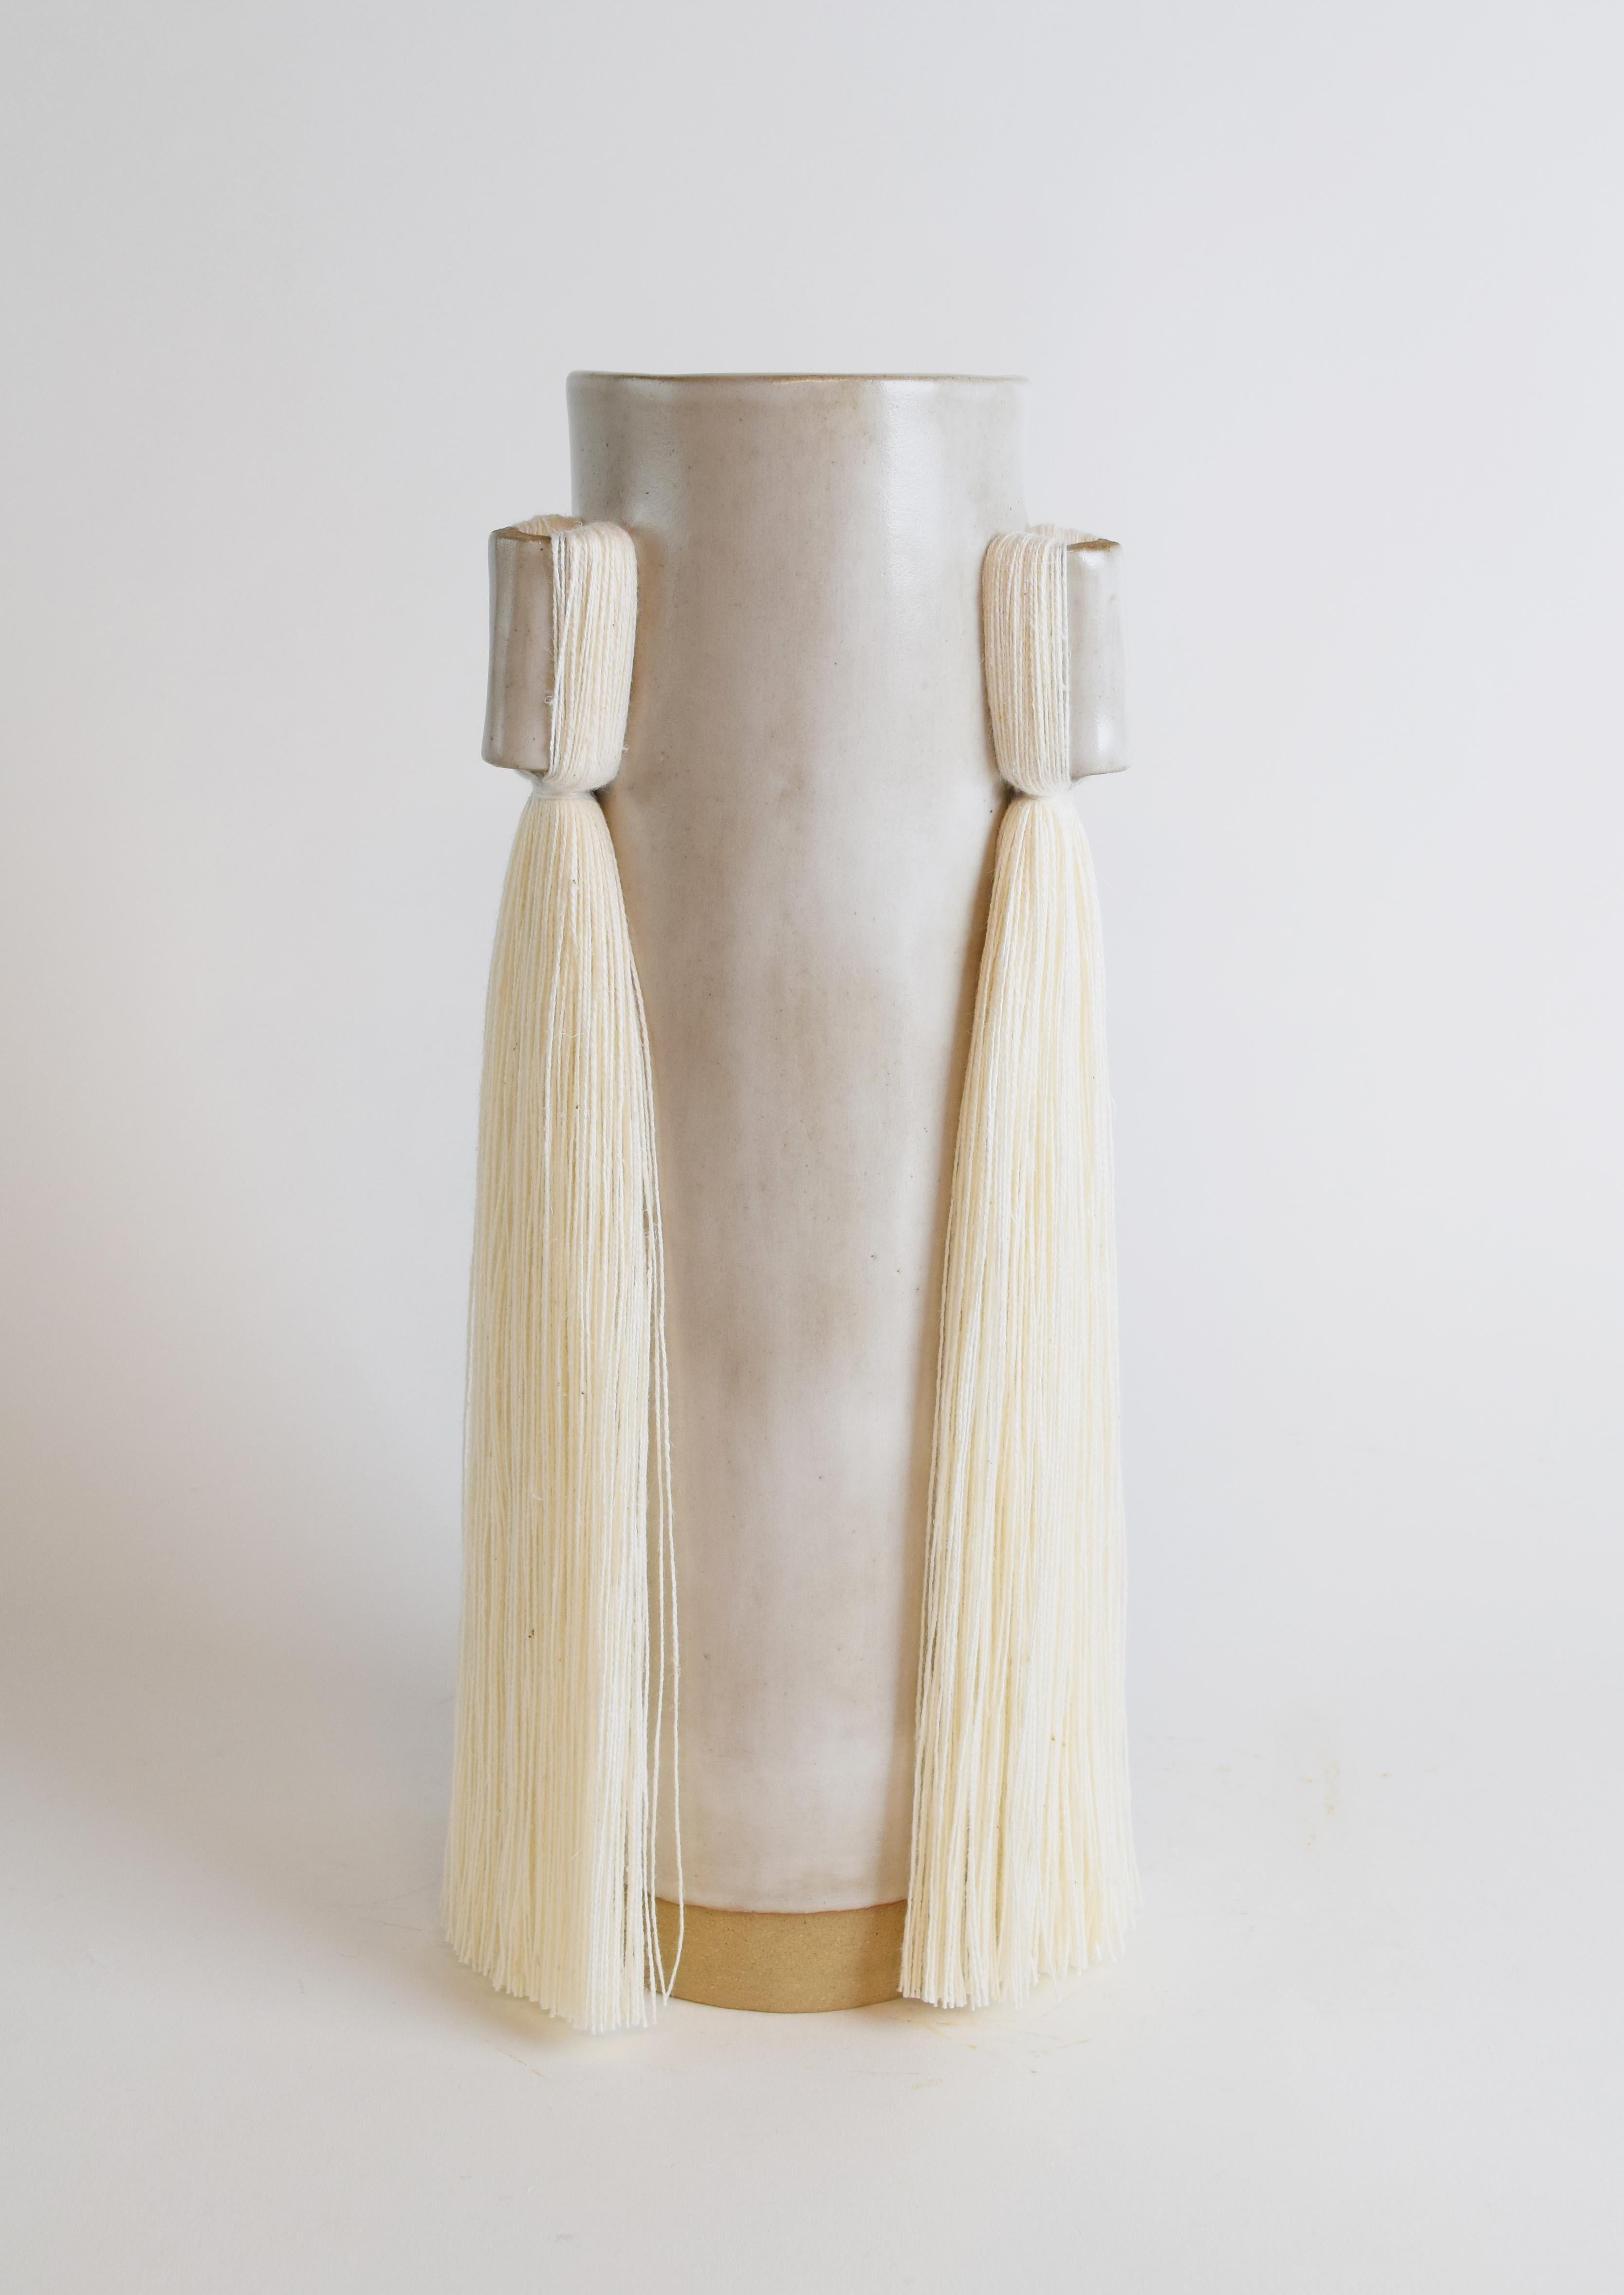 Vase #607 de Karen Gayle Tinney

Des longueurs de franges ornent 3 côtés de ce vase dont les dimensions sont généreuses pour contenir une grande composition de fleurs.

Grès formé à la main avec une glaçure blanche satinée et des détails de franges